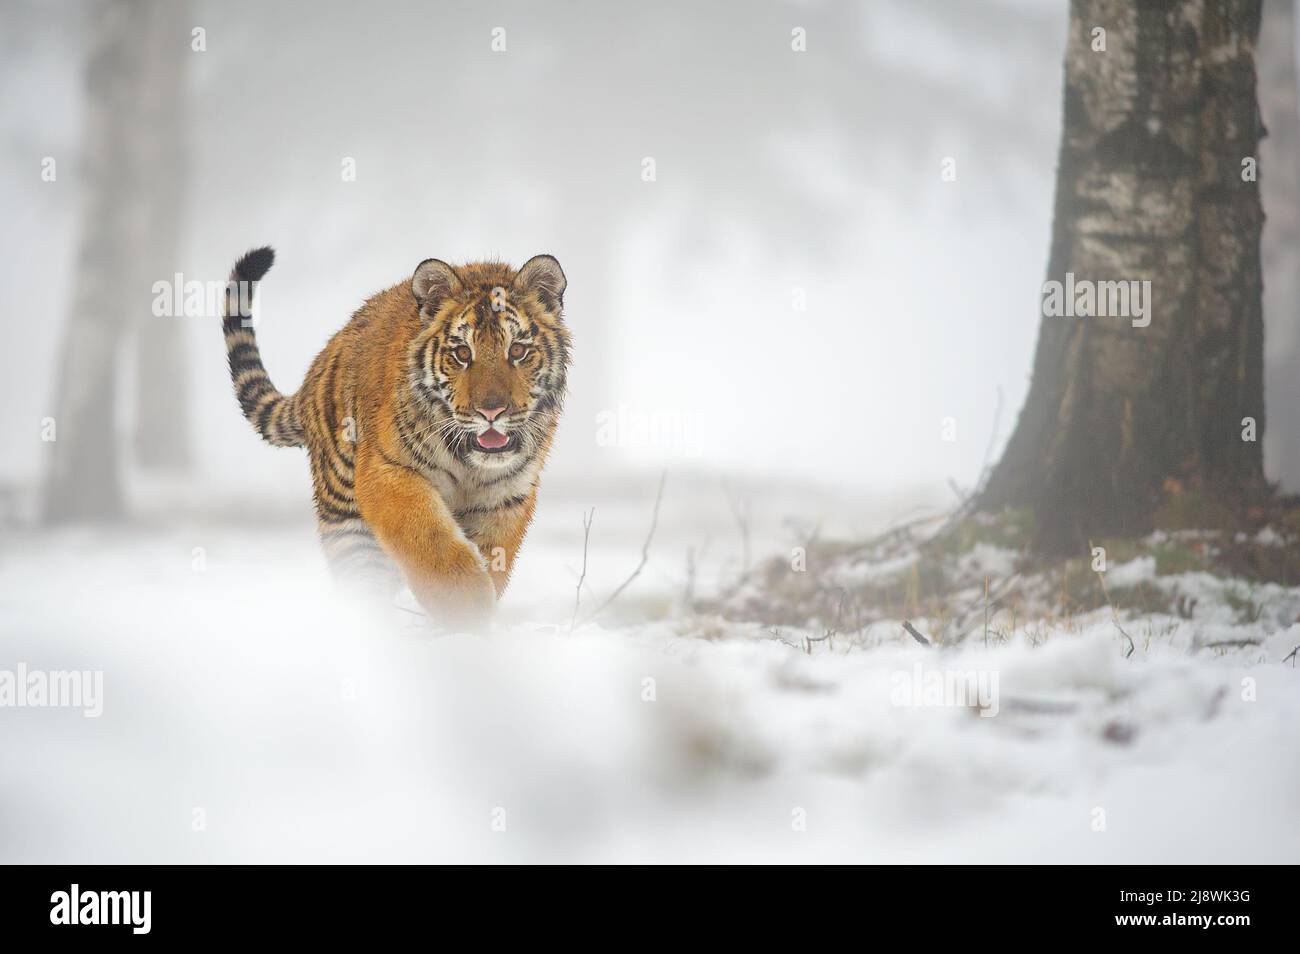 Tigre siberiana che cammina direttamente verso la macchina fotografica. Scatto frontale in inverno con molta neve. Foto Stock